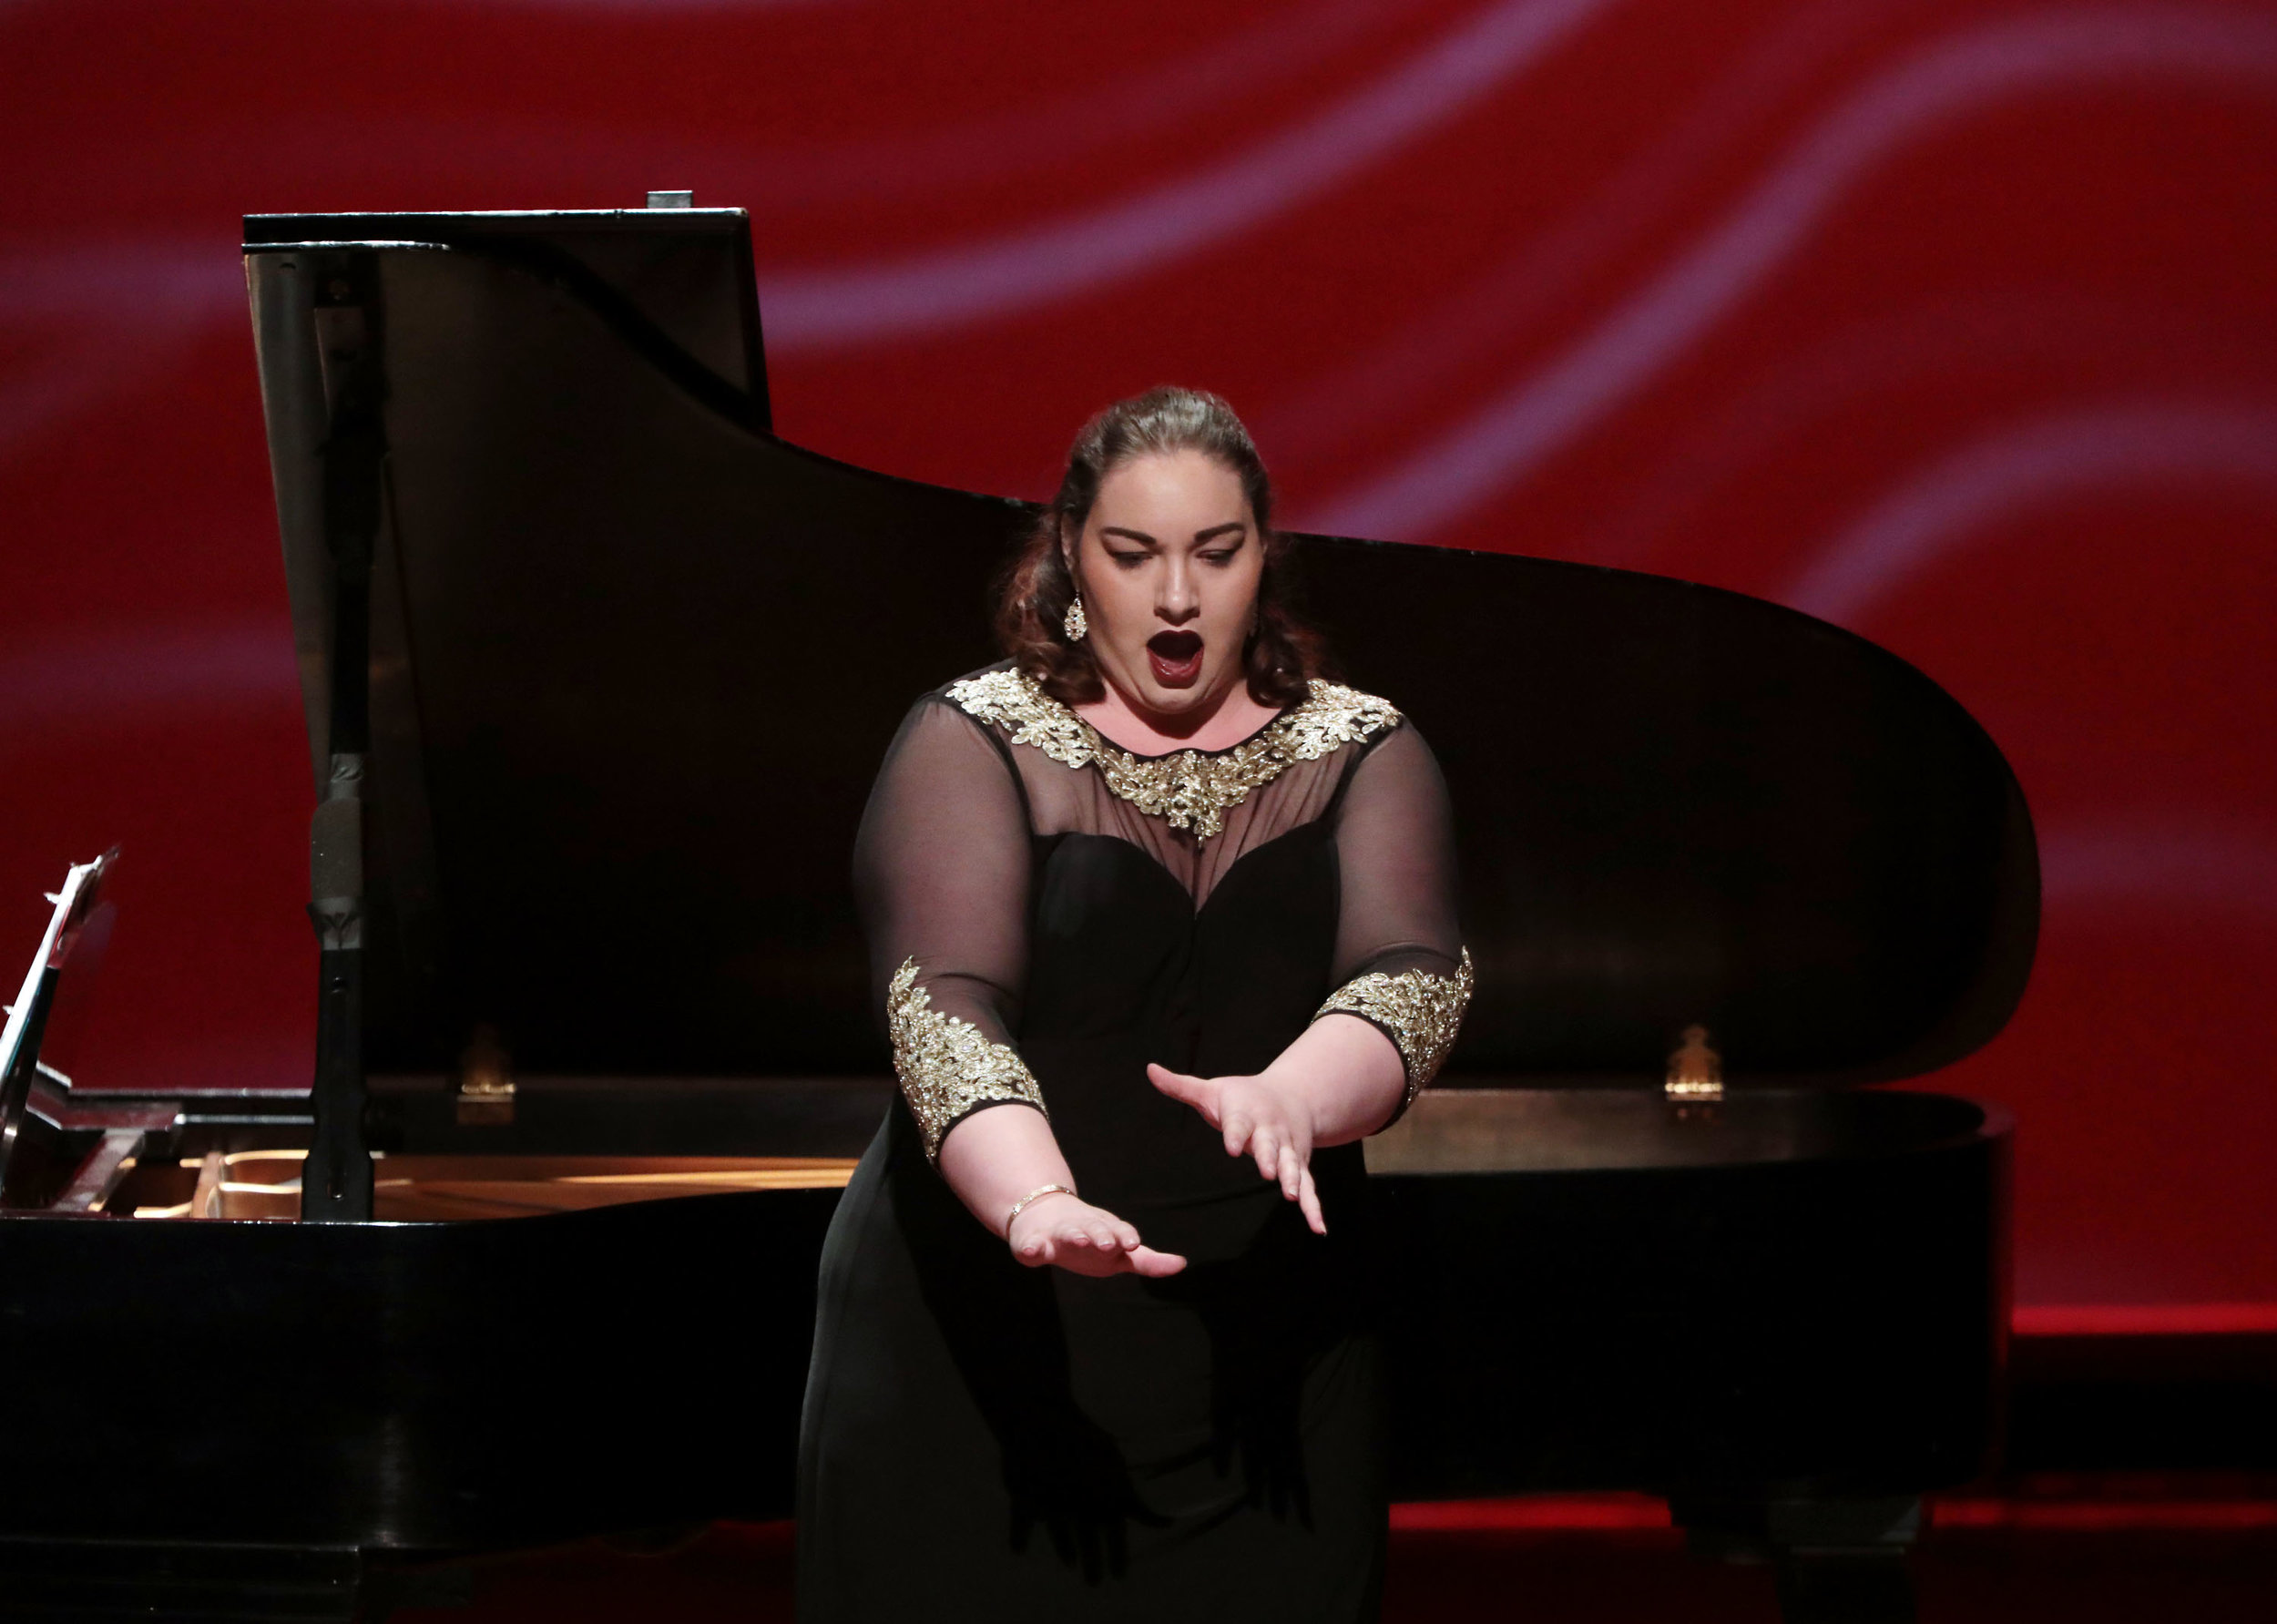  Lindsay performs Plus grand, dans son obscurité from Gounod’s La Reine de Saba with Ed Bak (pianist) 